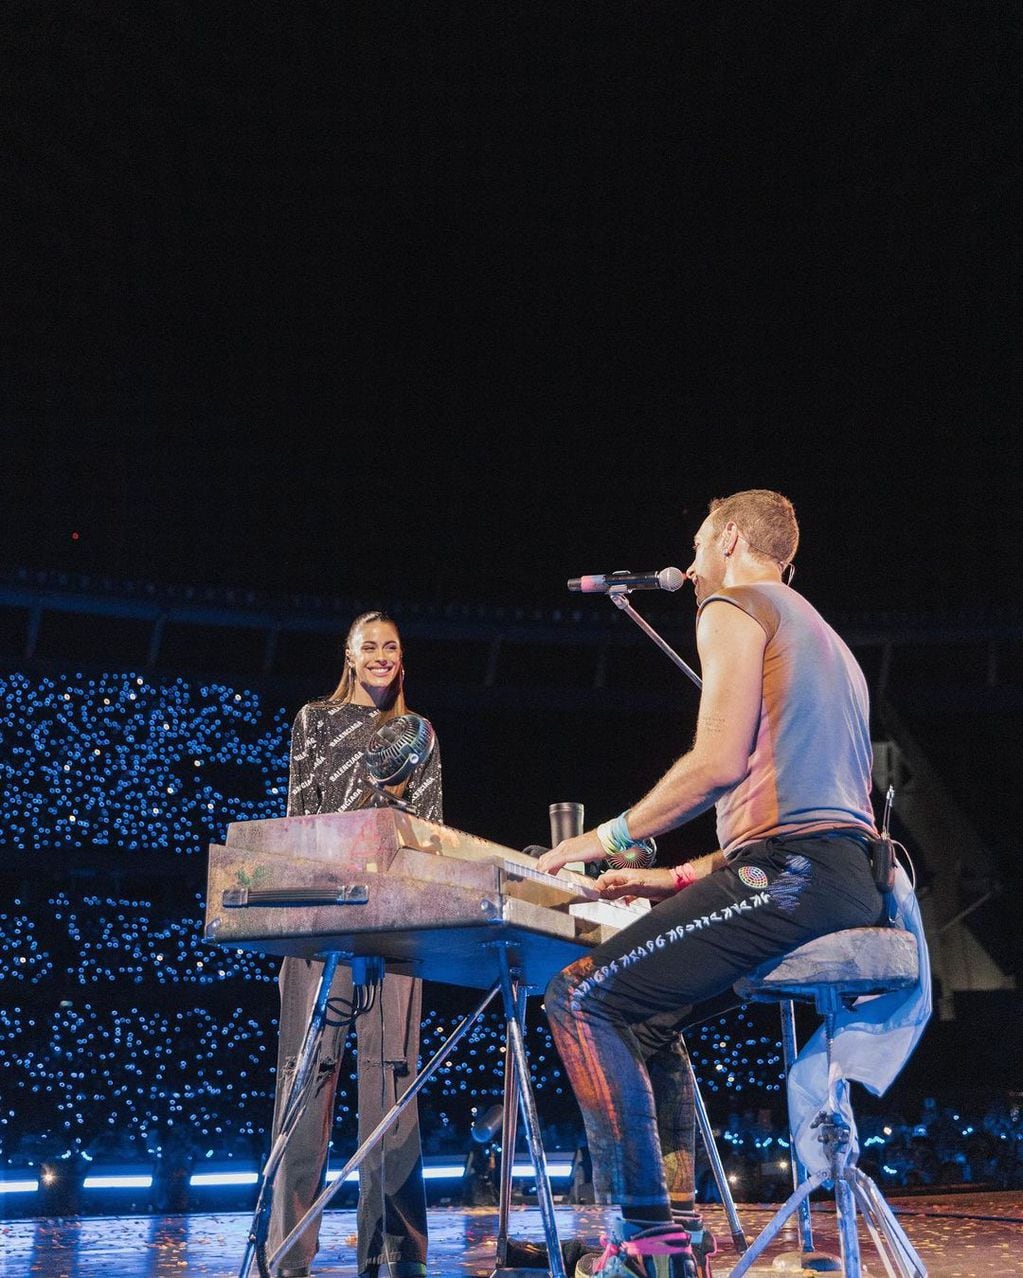 Tini Stoessel sorprendió al público al participar del recital de Coldplay.